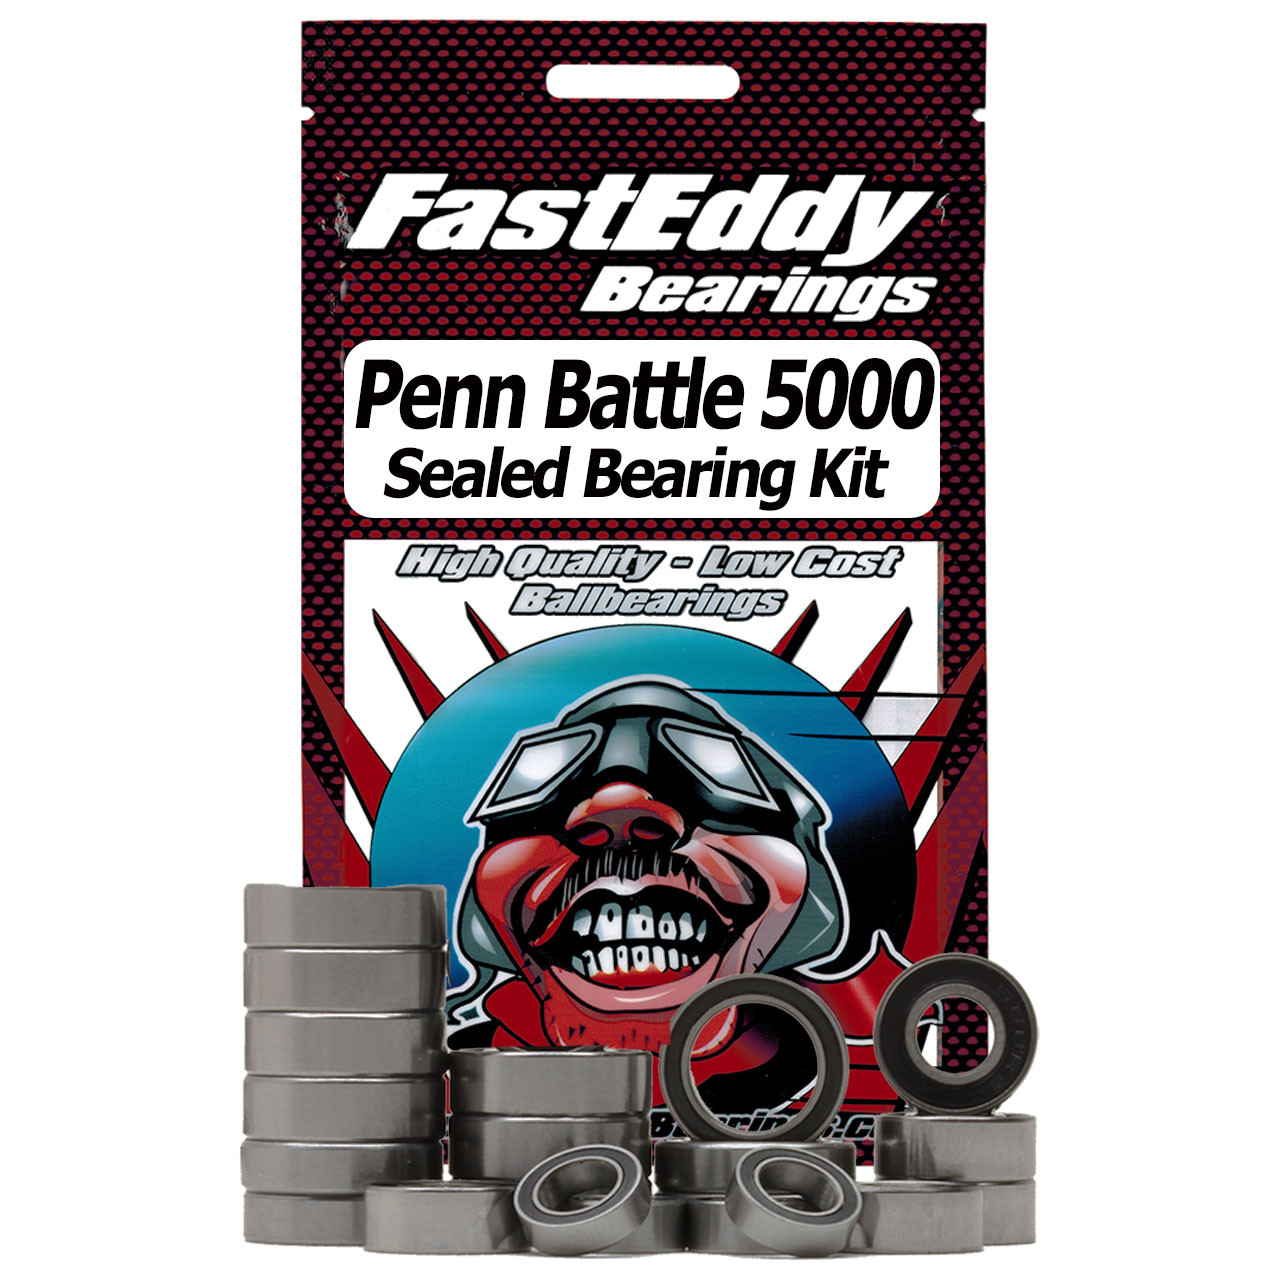 Penn Battle 5000 Spinning Reel Rubber Sealed Bearing Kit